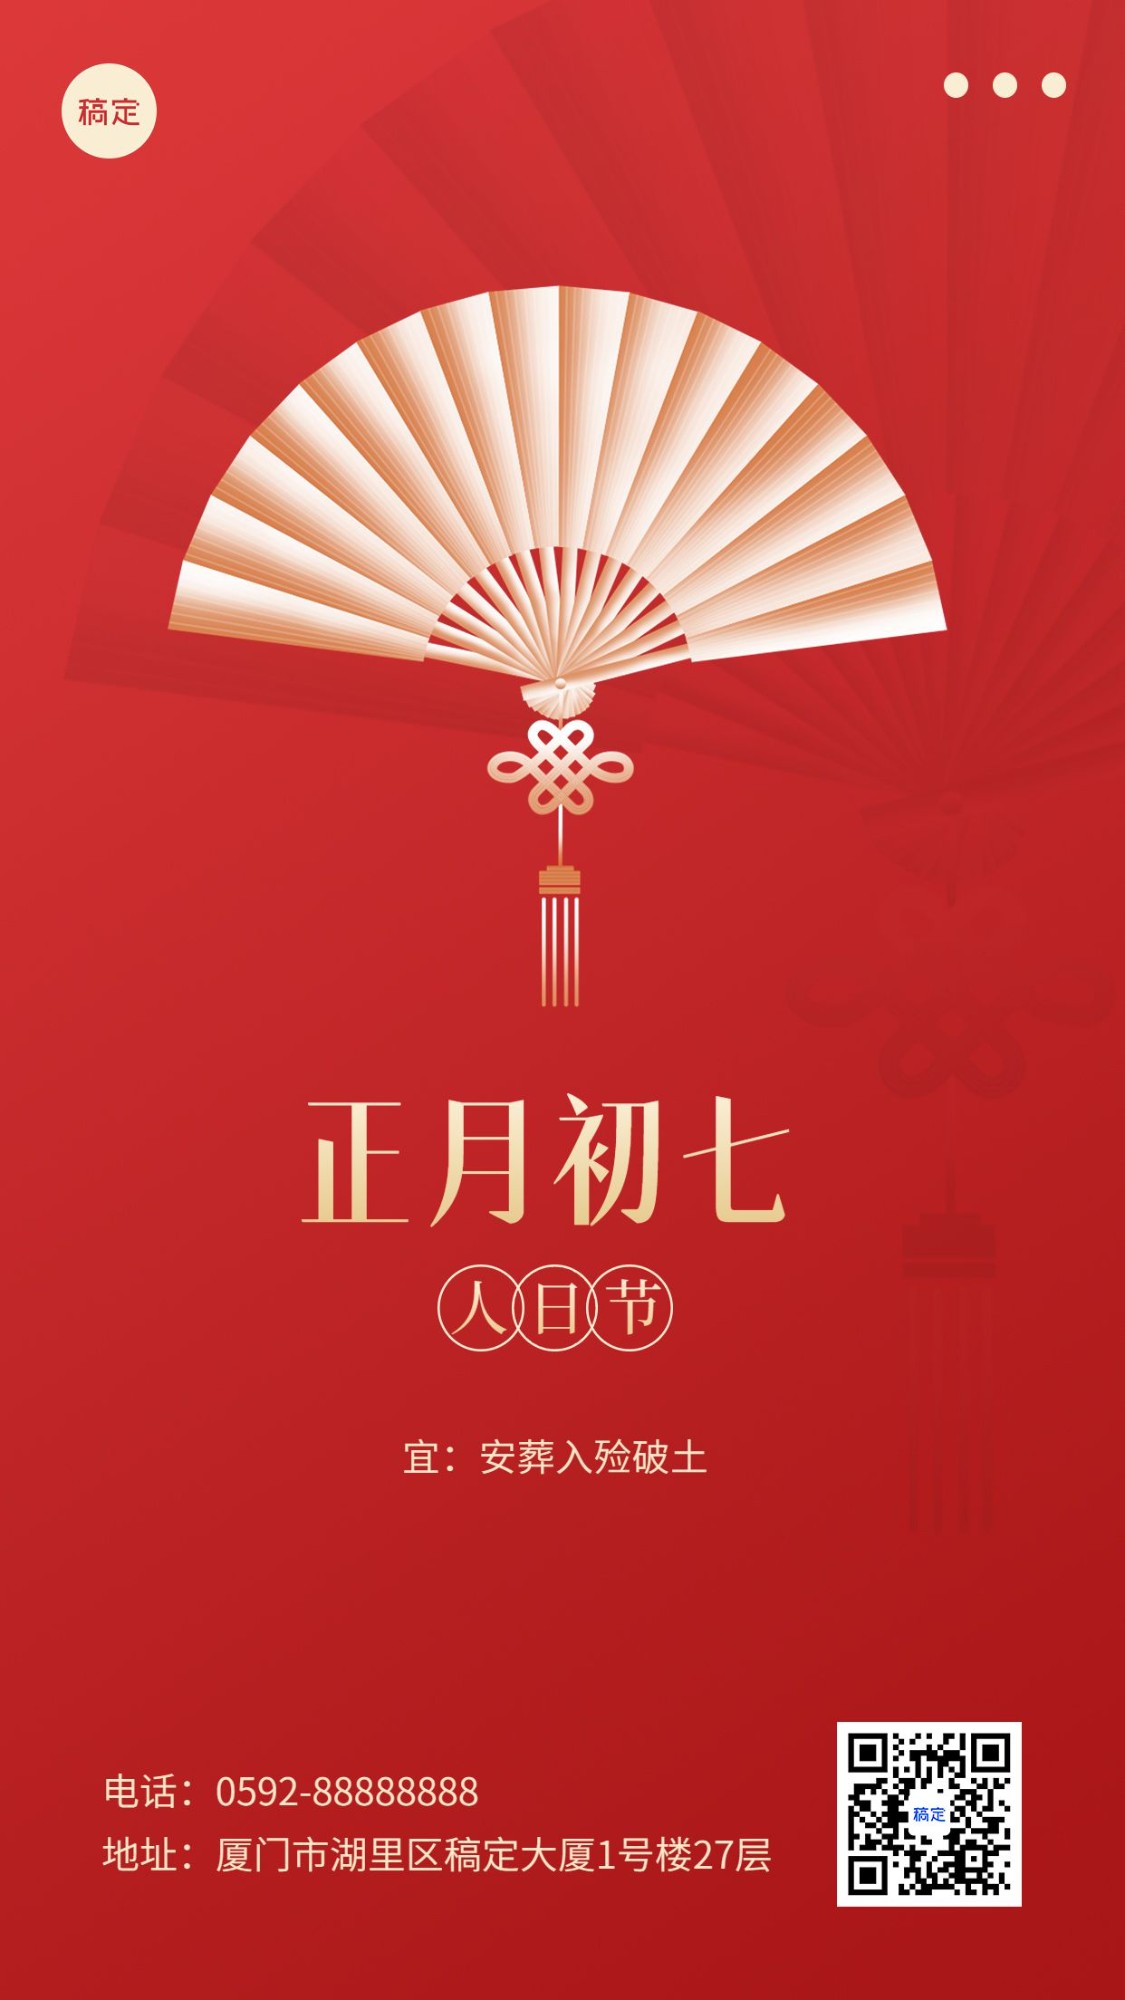 春节新年祝福正月初七简约排版套系手机海报